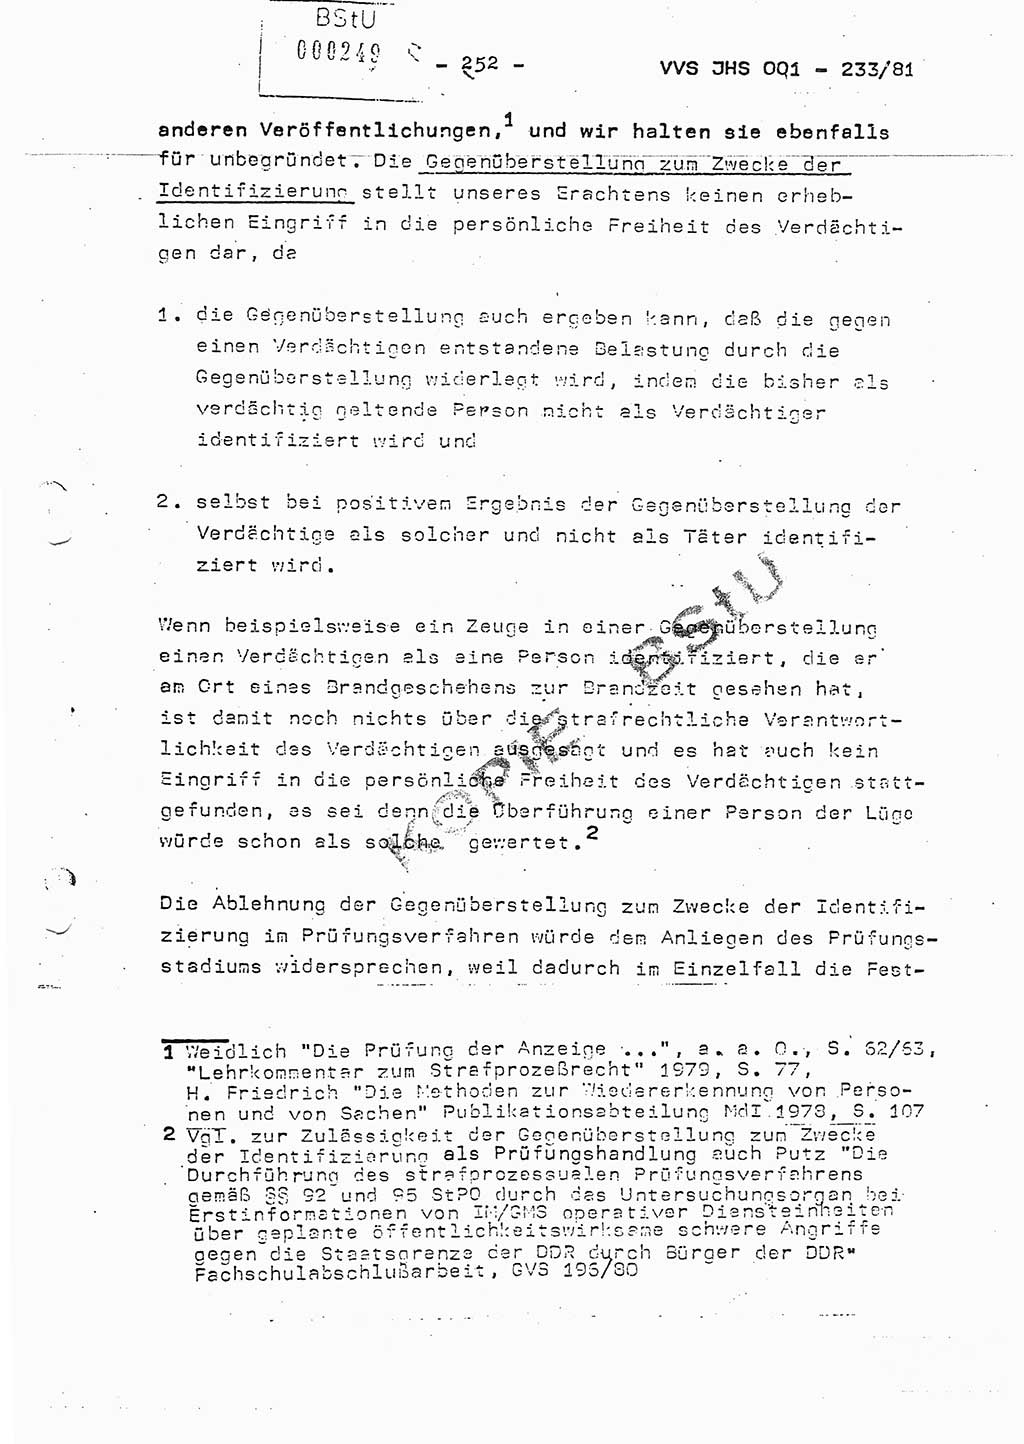 Dissertation Oberstleutnant Horst Zank (JHS), Oberstleutnant Dr. Karl-Heinz Knoblauch (JHS), Oberstleutnant Gustav-Adolf Kowalewski (HA Ⅸ), Oberstleutnant Wolfgang Plötner (HA Ⅸ), Ministerium für Staatssicherheit (MfS) [Deutsche Demokratische Republik (DDR)], Juristische Hochschule (JHS), Vertrauliche Verschlußsache (VVS) o001-233/81, Potsdam 1981, Blatt 252 (Diss. MfS DDR JHS VVS o001-233/81 1981, Bl. 252)